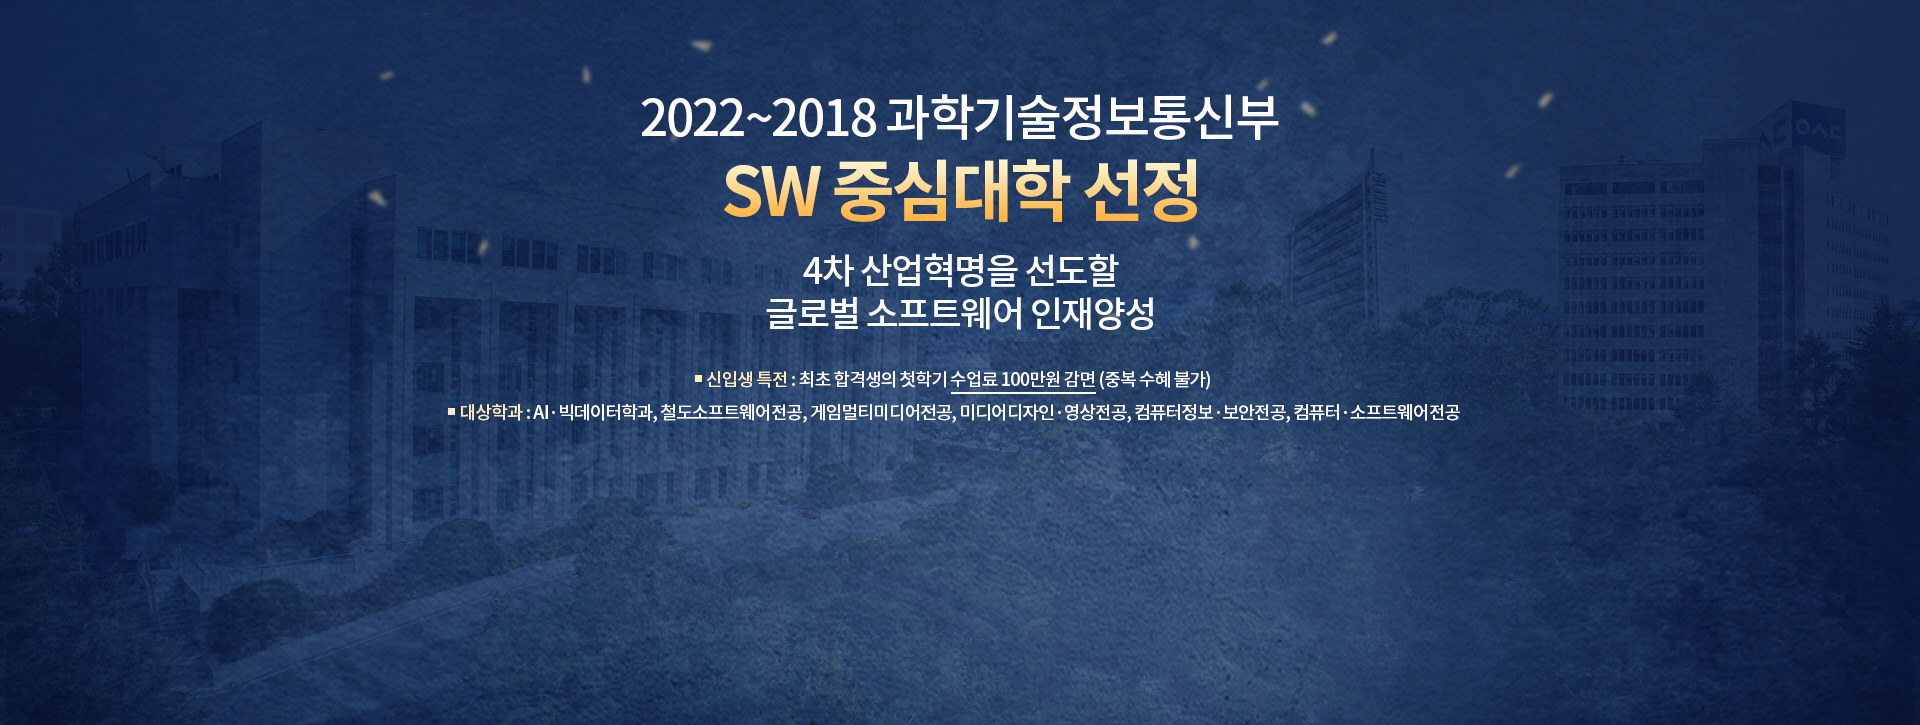 2022~2018 과학기술정보통신부 SW 중심대학 선정, 4차 산업혁명을 선도할 글로벌 소프트웨어 인재양성